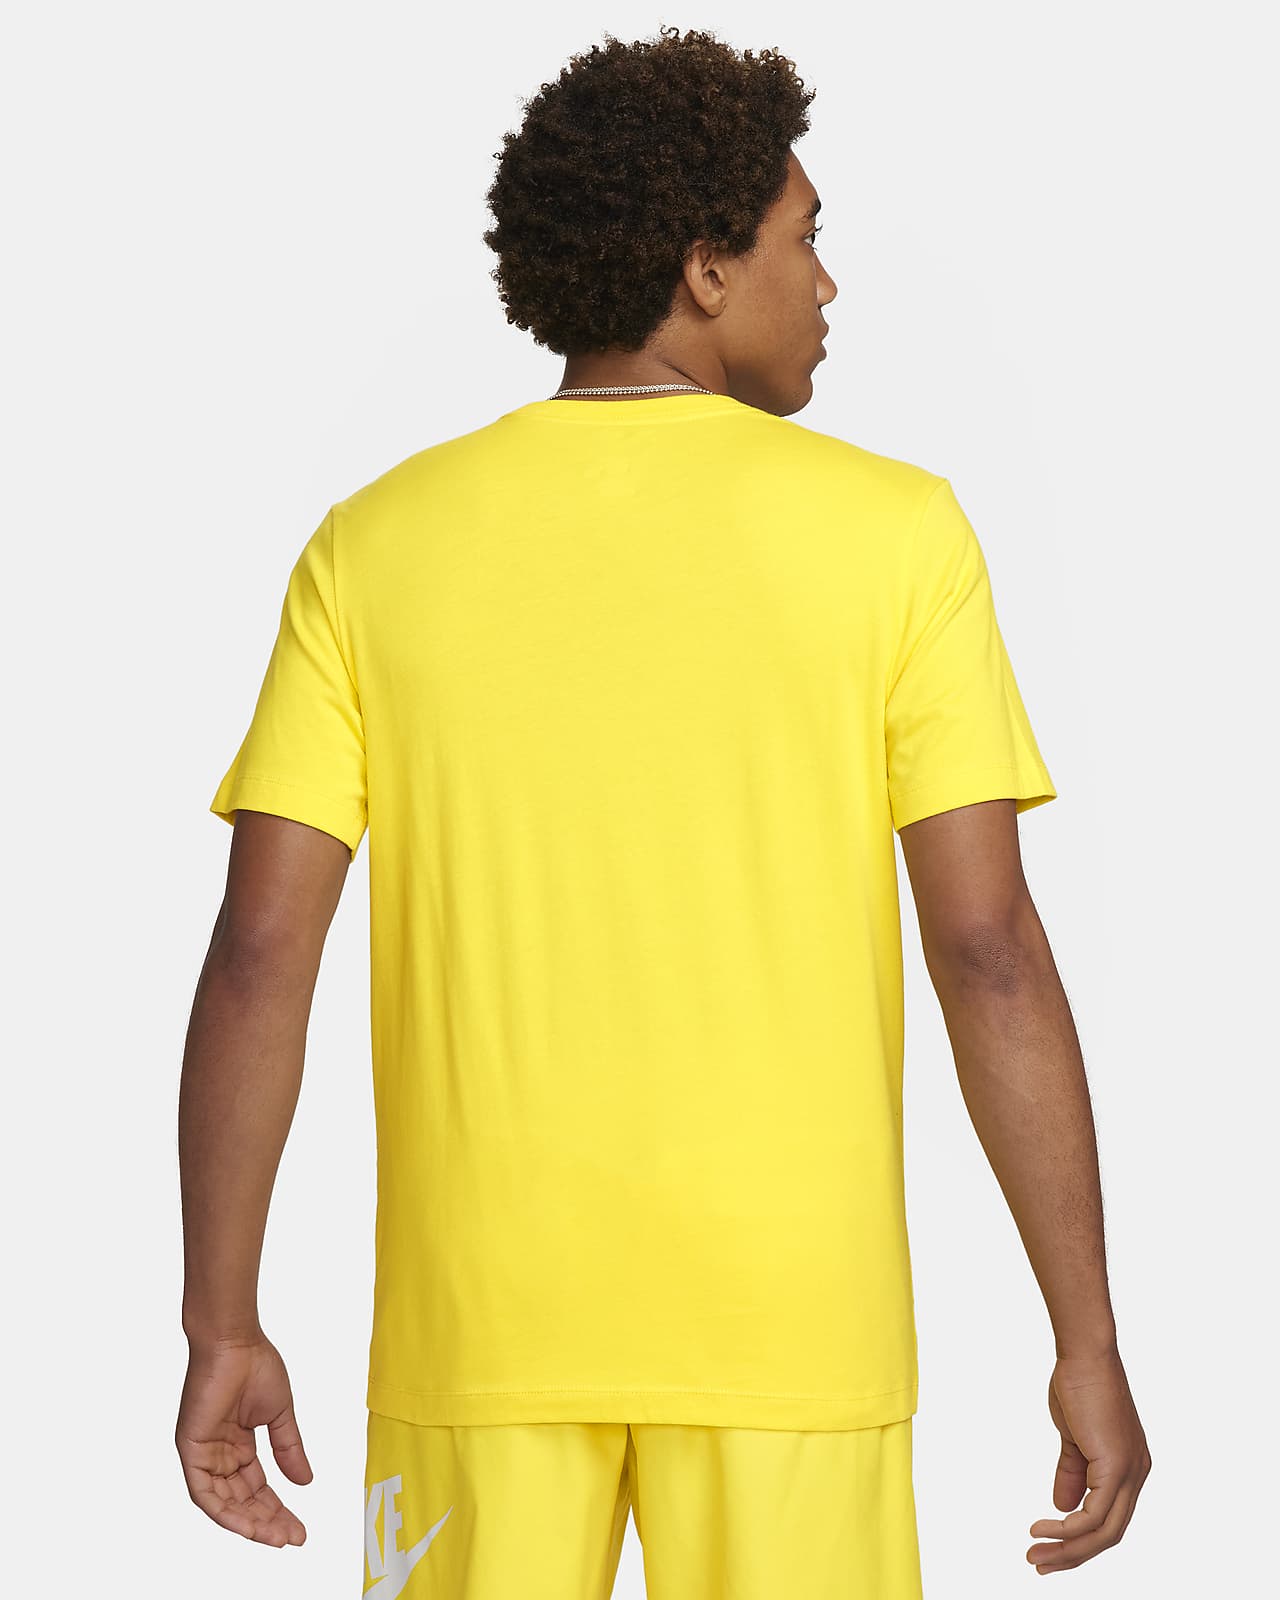 Nike Sportswear BeTrue Men's T-Shirt.